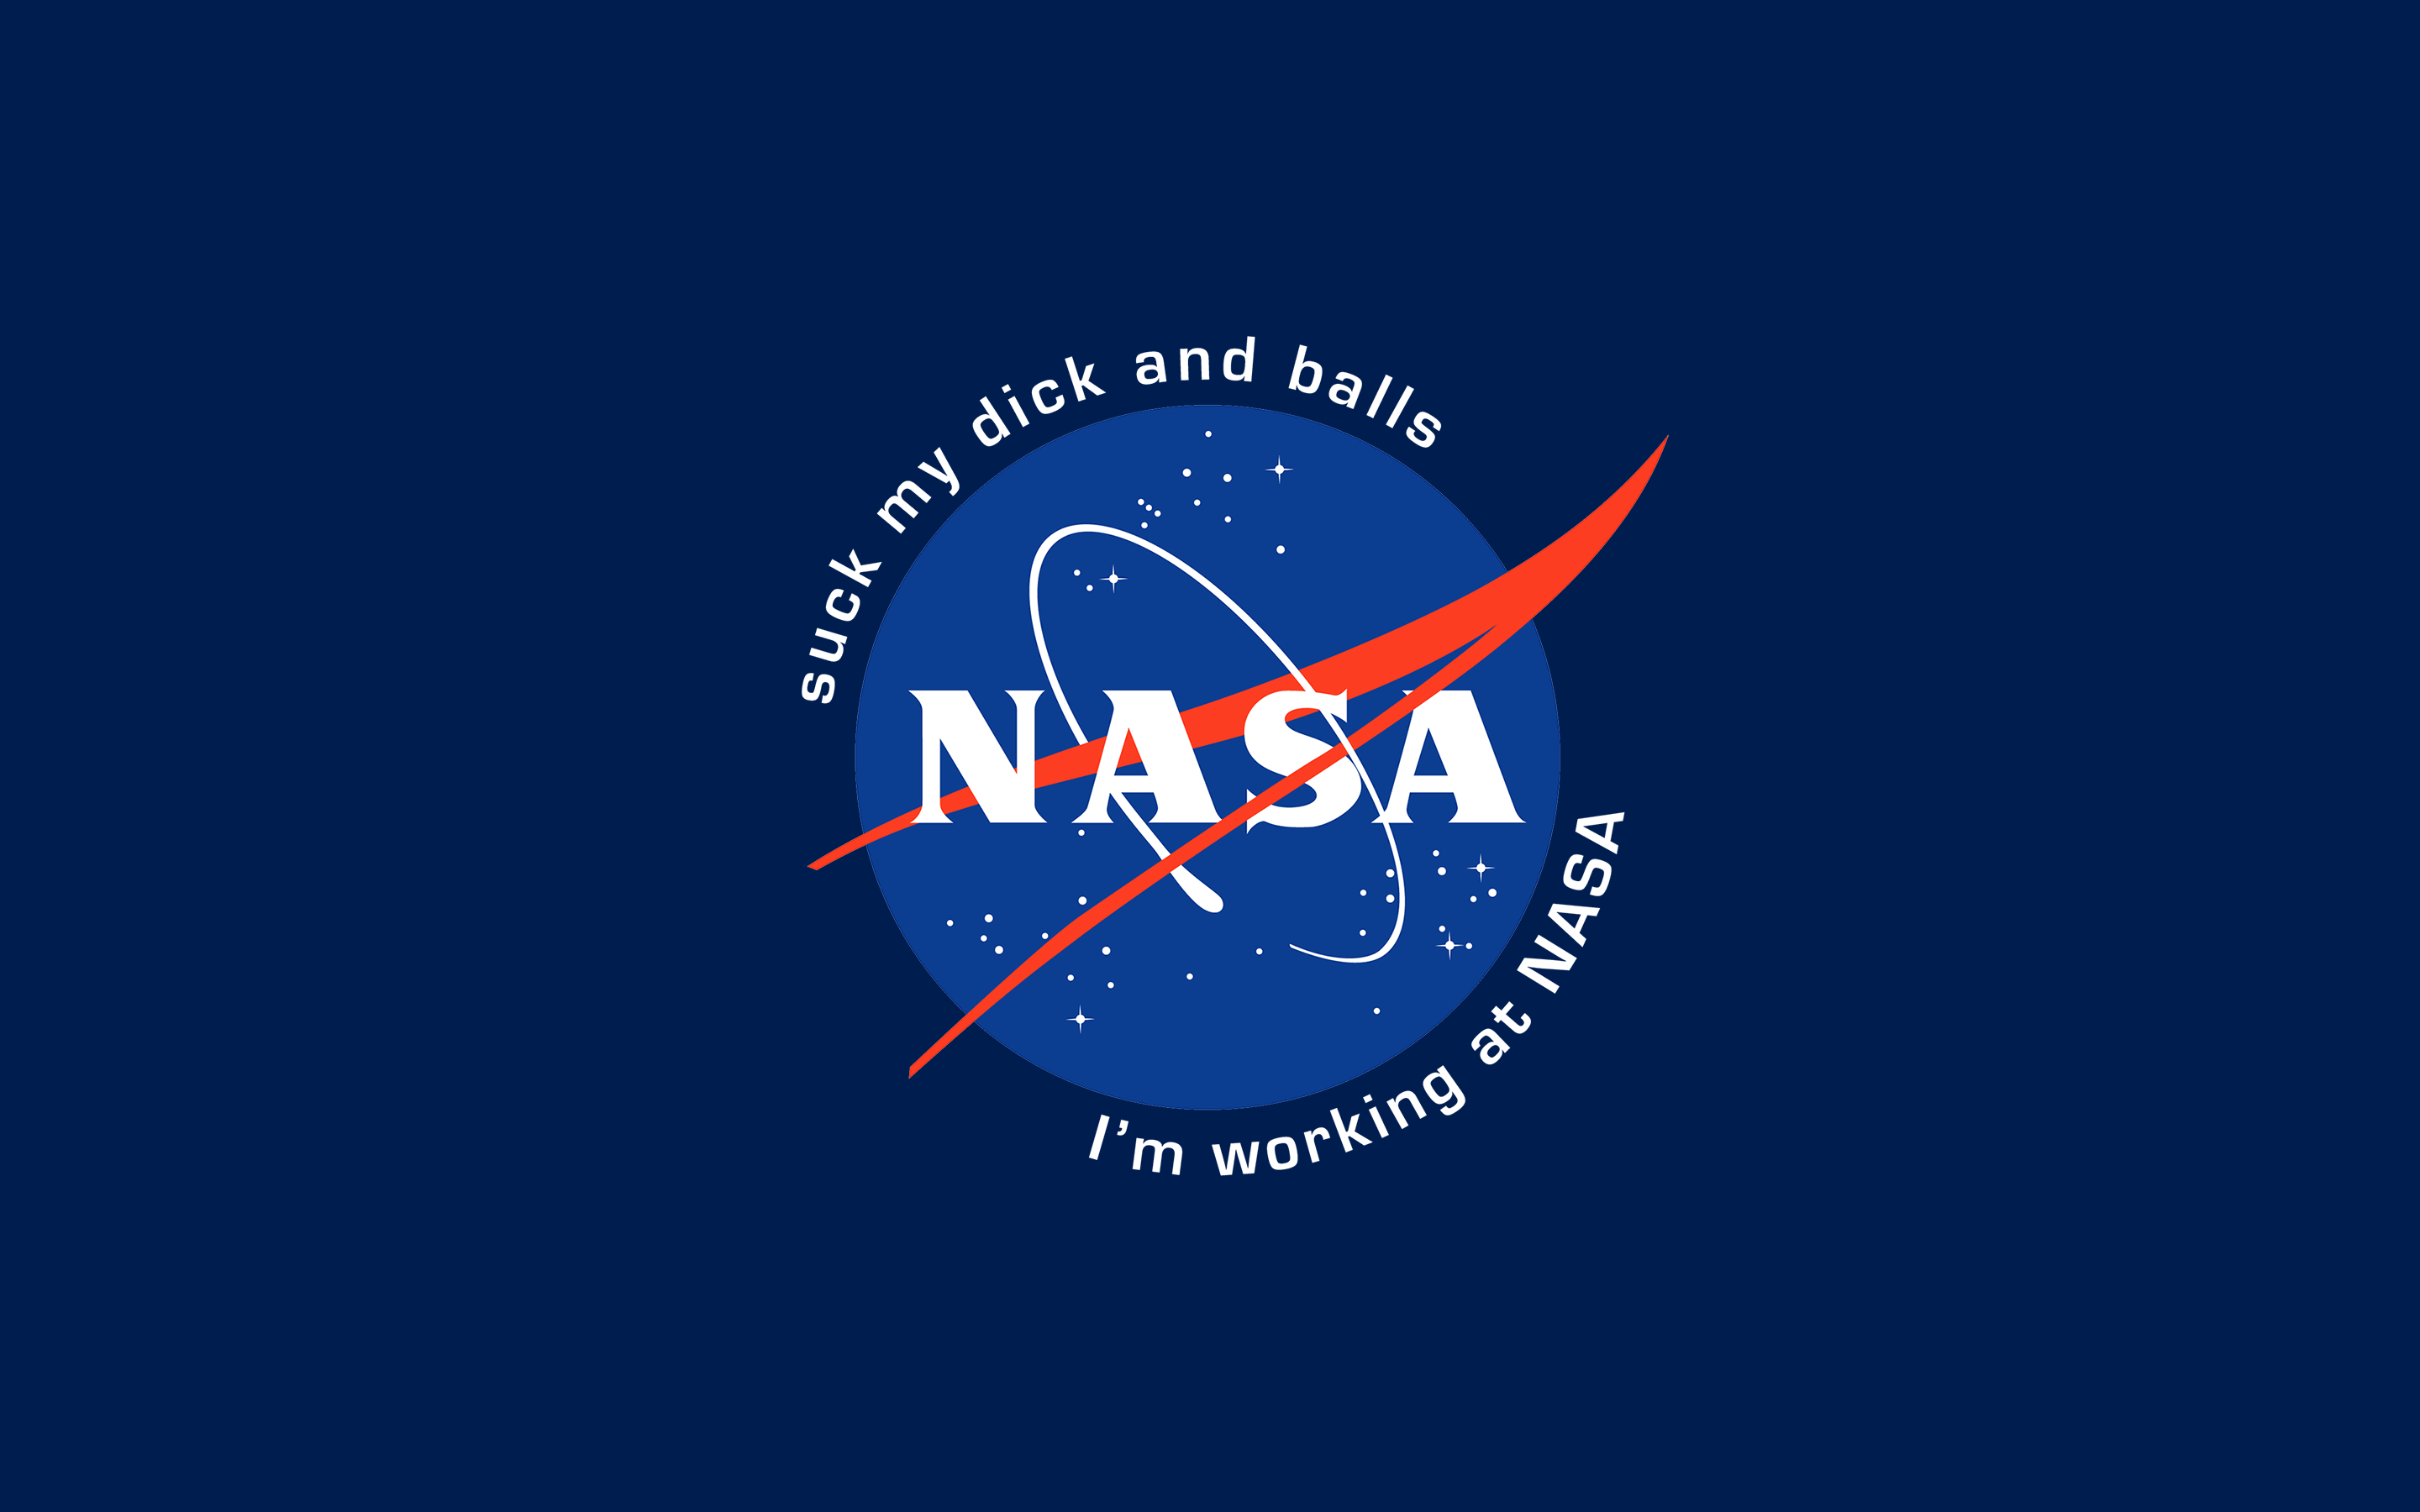 2880x1800 NASA wallpaper () | Nasa wallpaper, Nasa, Supreme iphone wallpaper